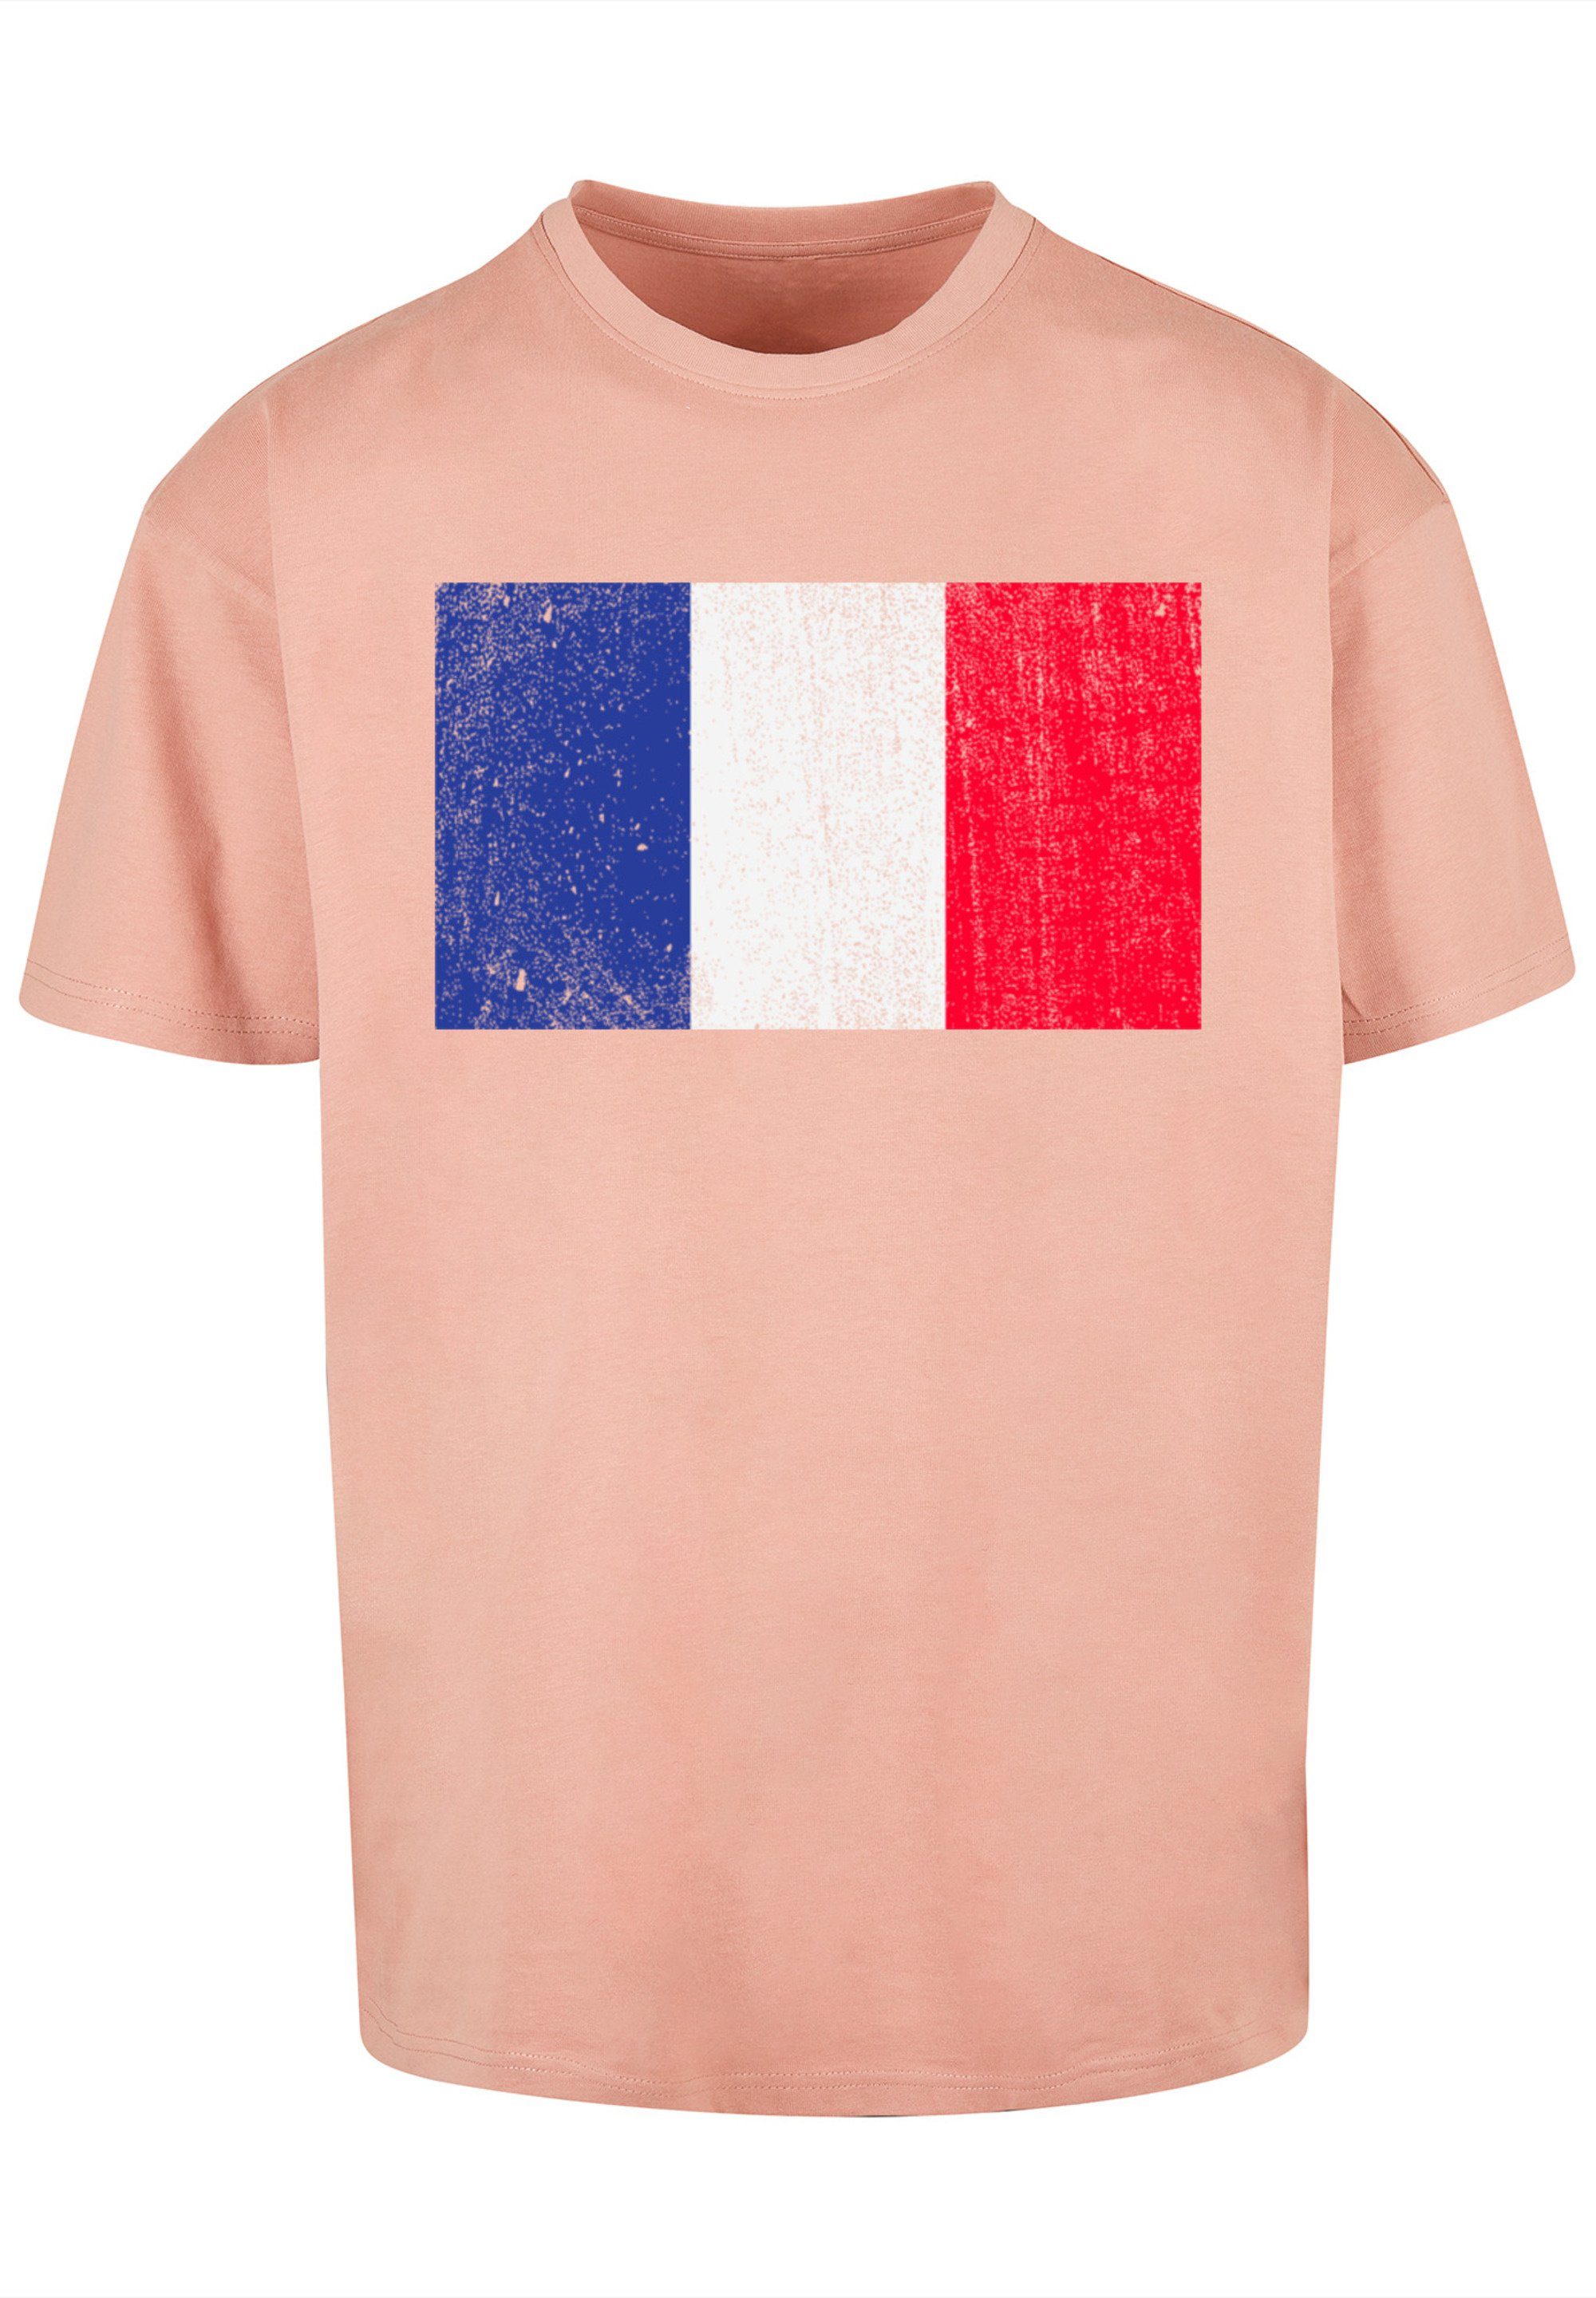 Weite distressed Flagge Frankreich Passform überschnittene T-Shirt France Schultern und Print, F4NT4STIC